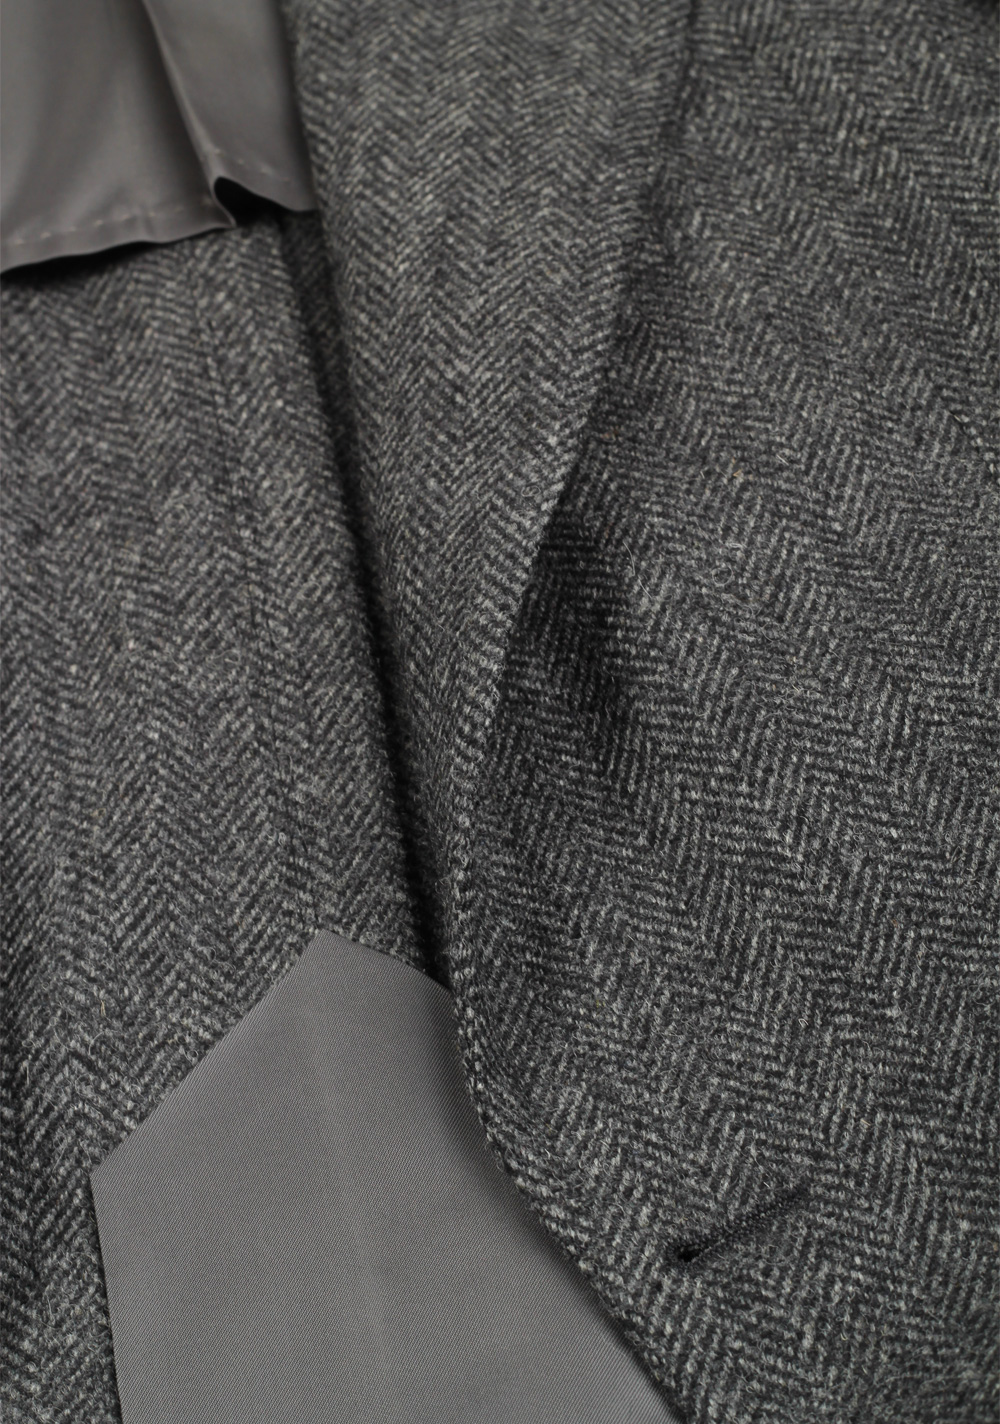 TOM FORD Atticus Gray Herringbone Suit Size 46 / 36R U.S. | Costume Limité